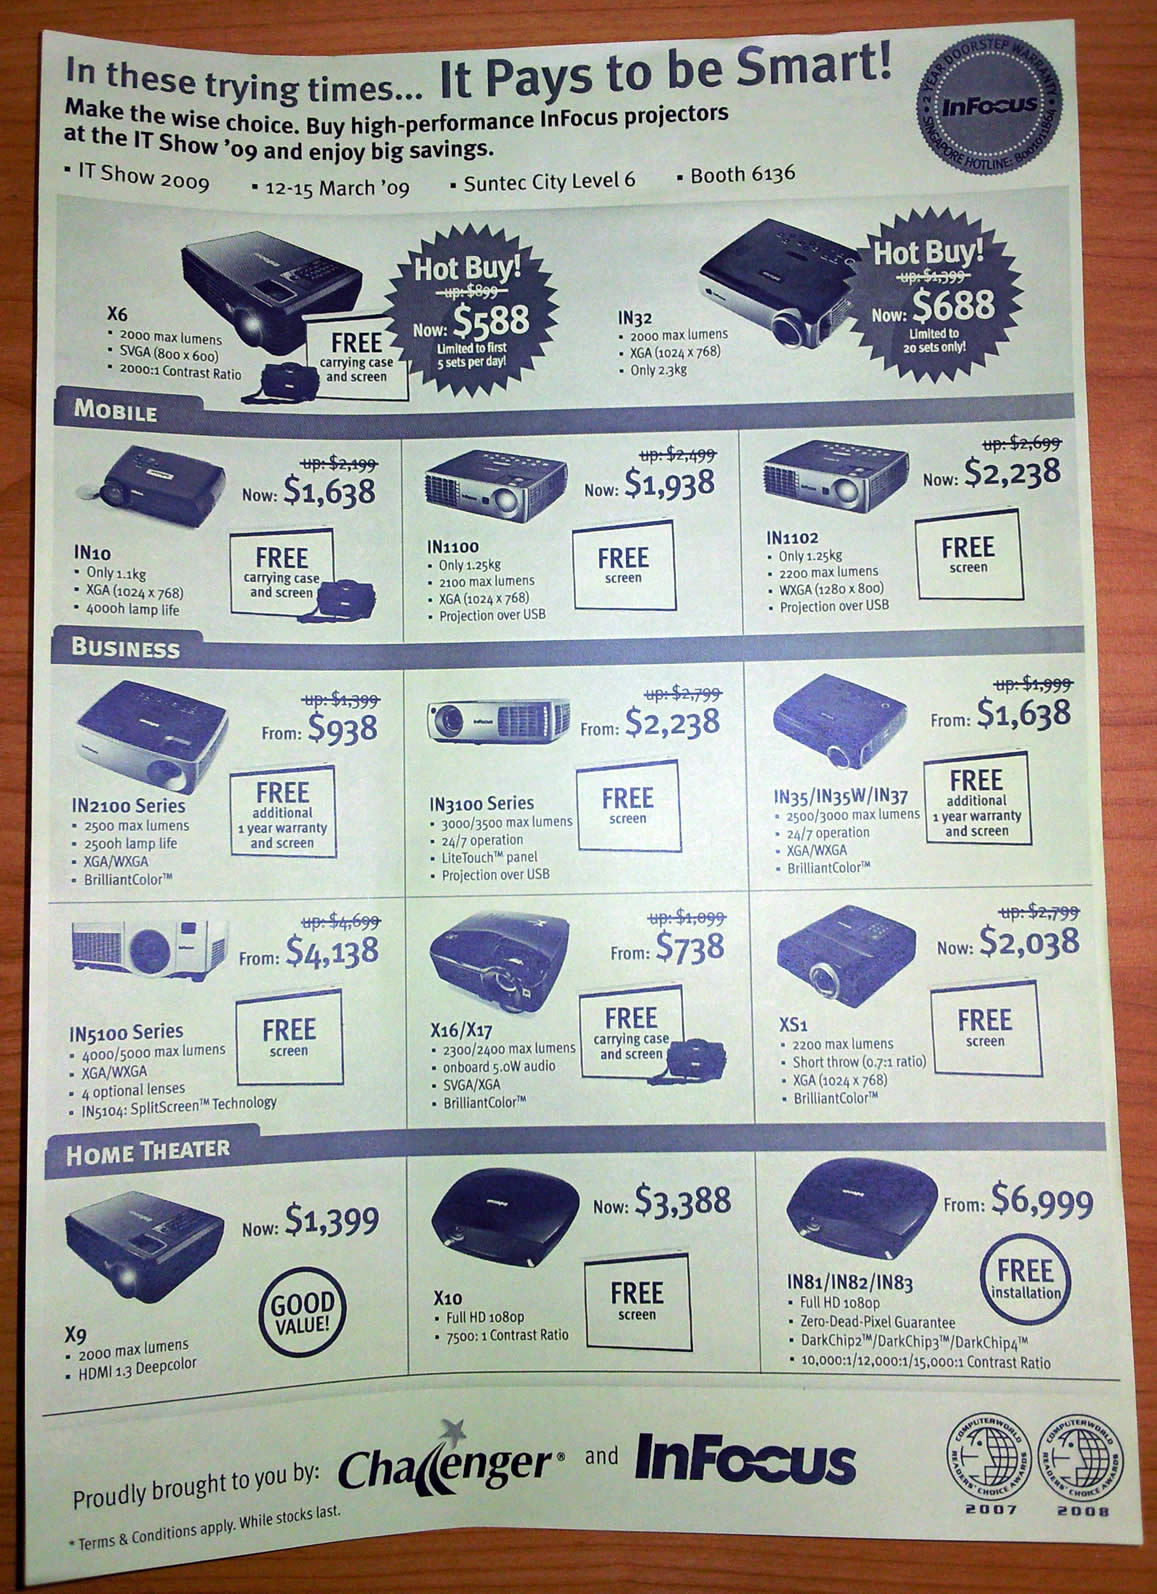 IT Show 2009 price list image brochure of Infocus Projectors